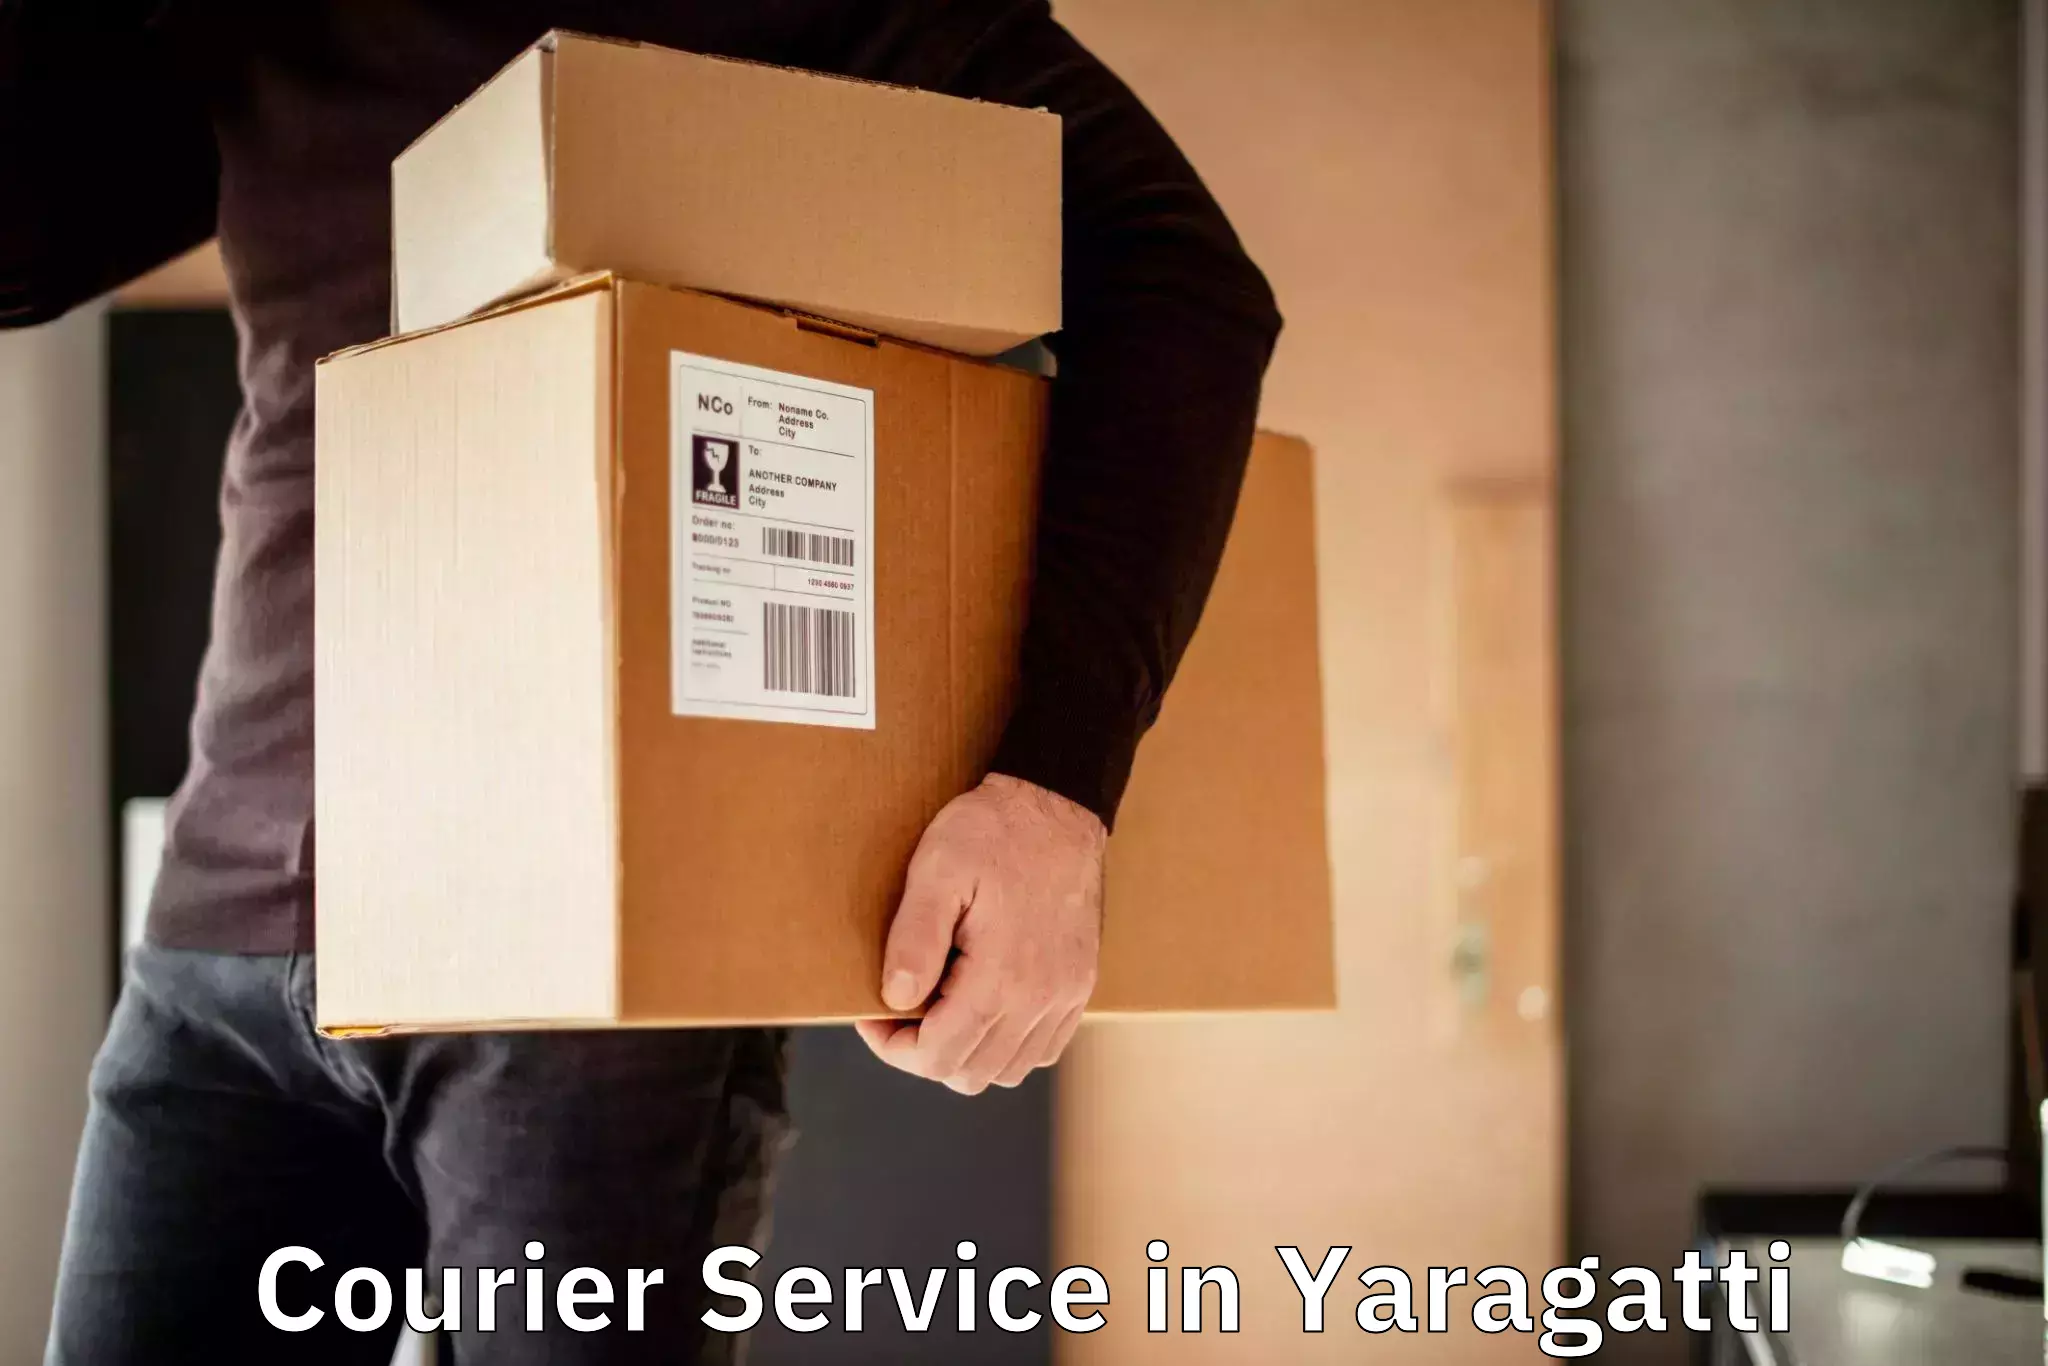 Lightweight courier in Yaragatti